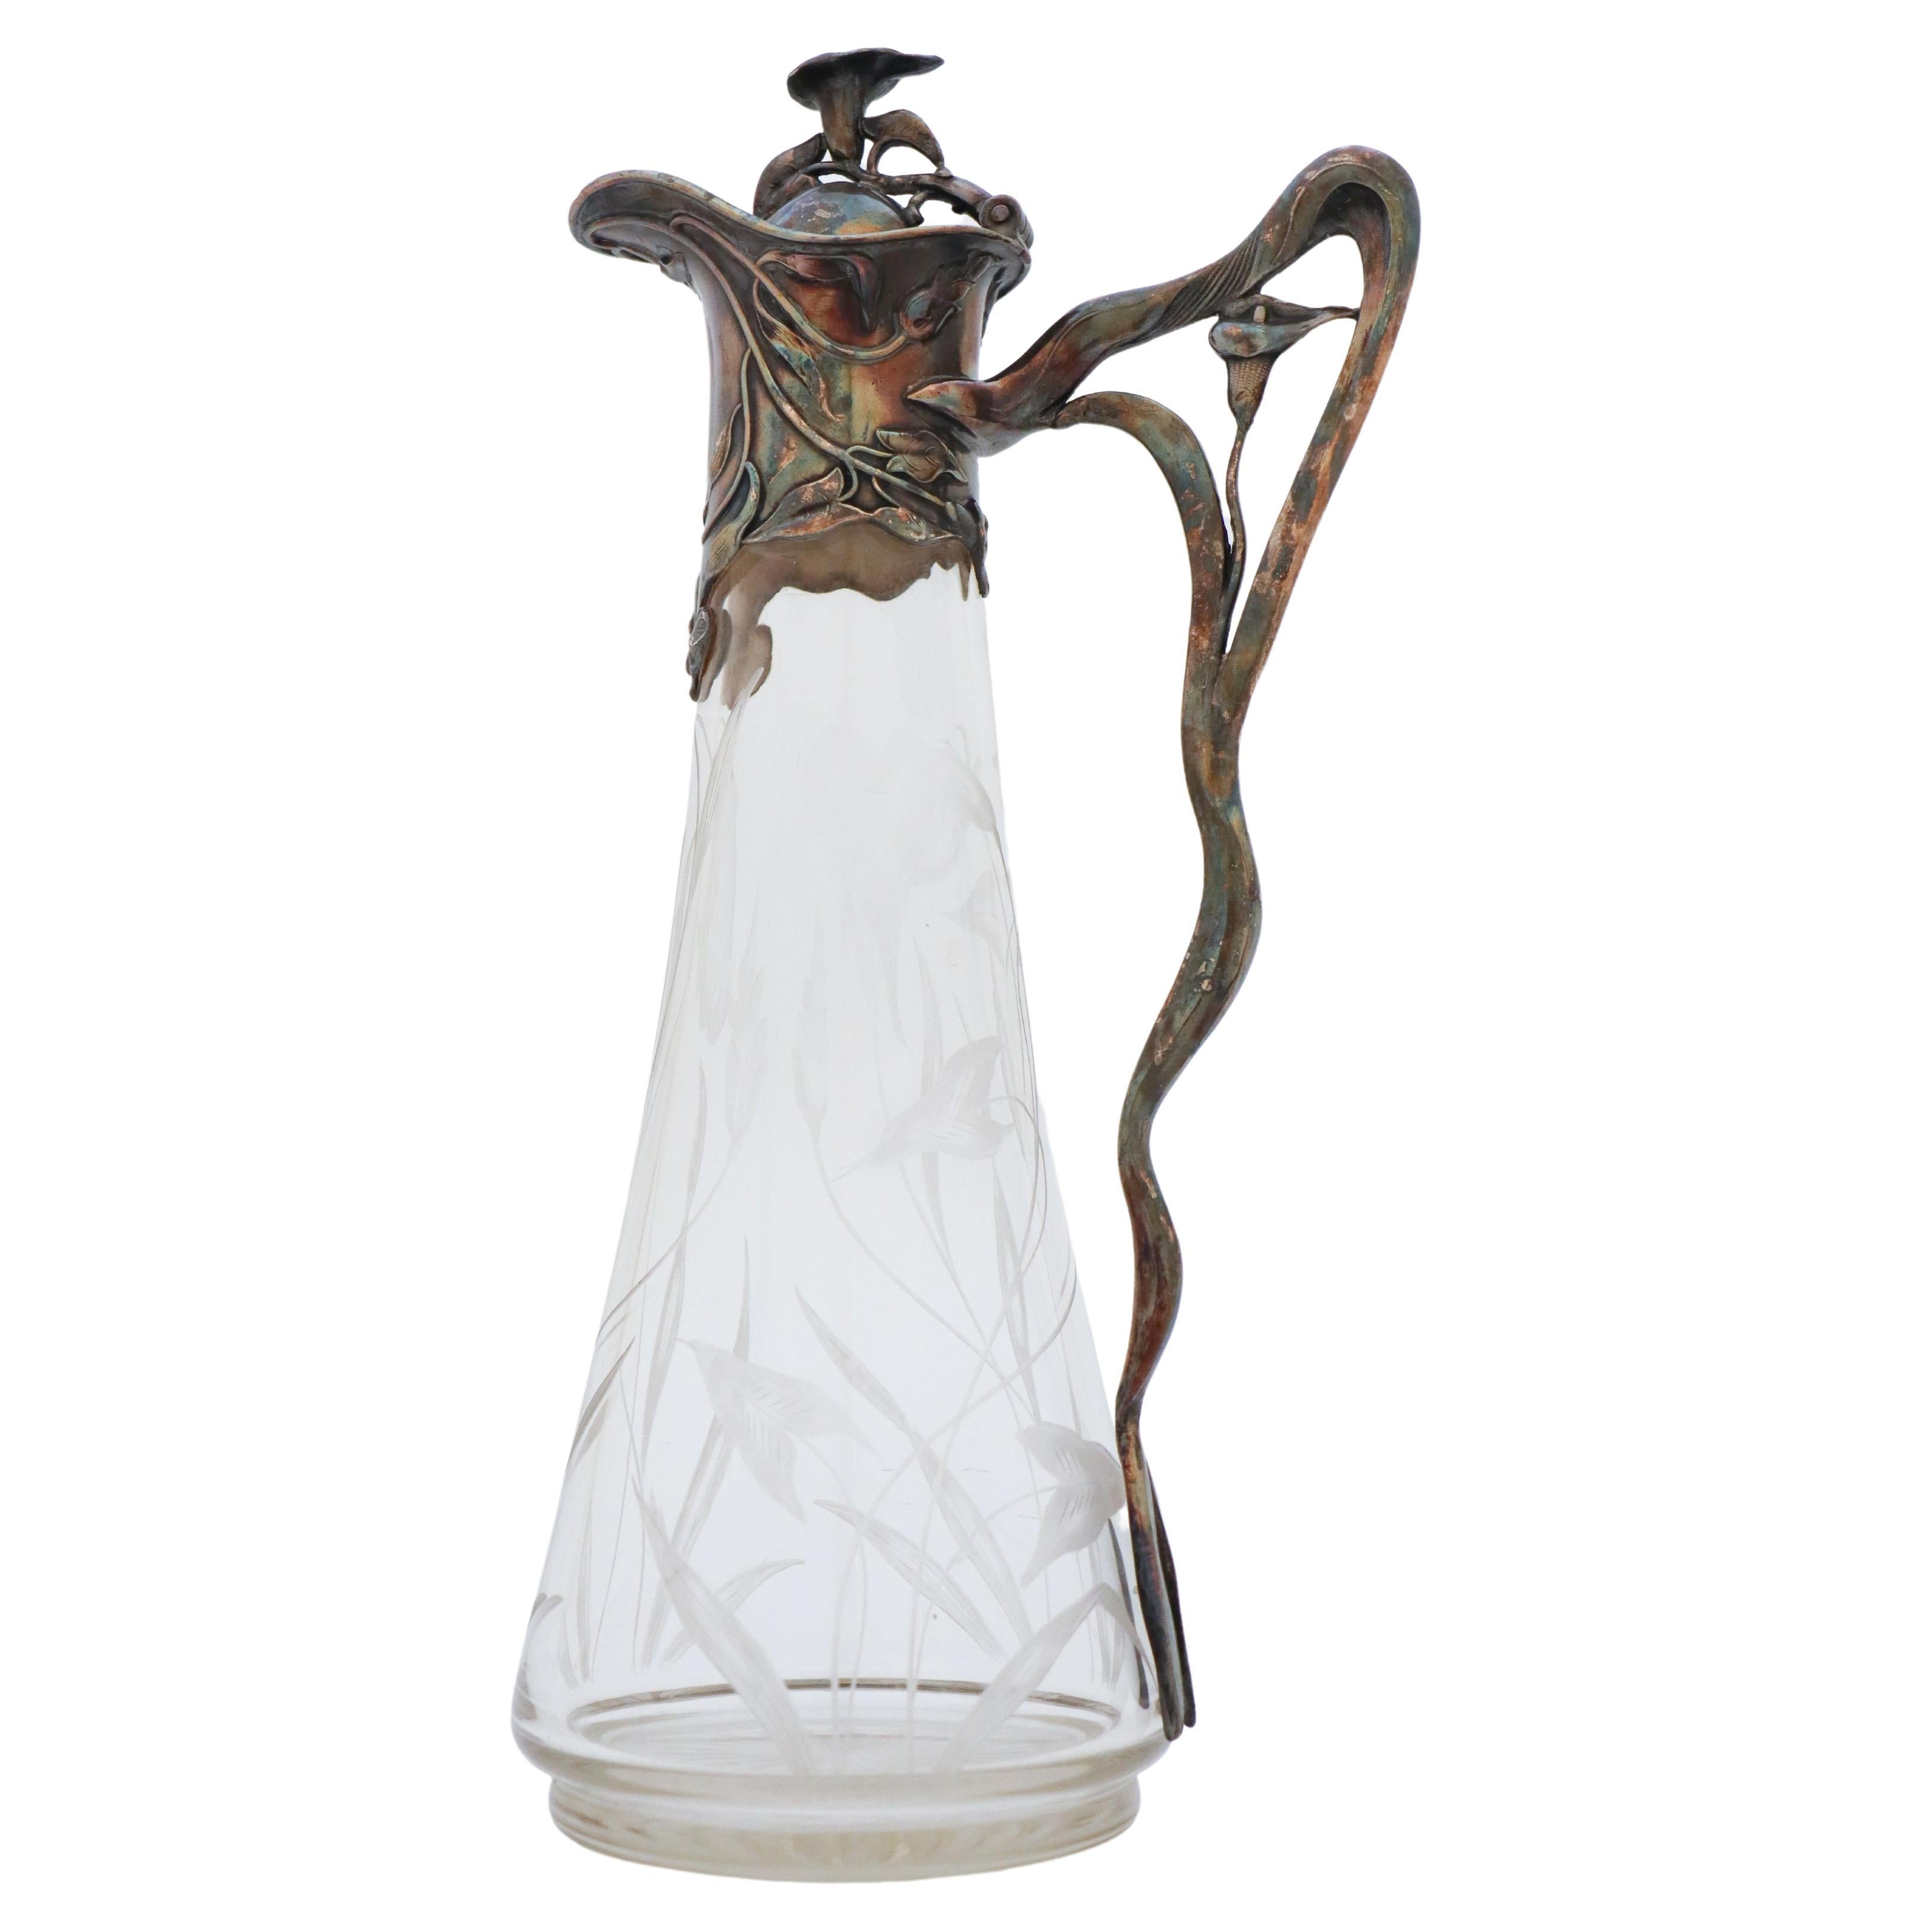 Art Nouveau Decanter, Antique Pitcher, Floral Engraved Glass & Metal, Jugend For Sale